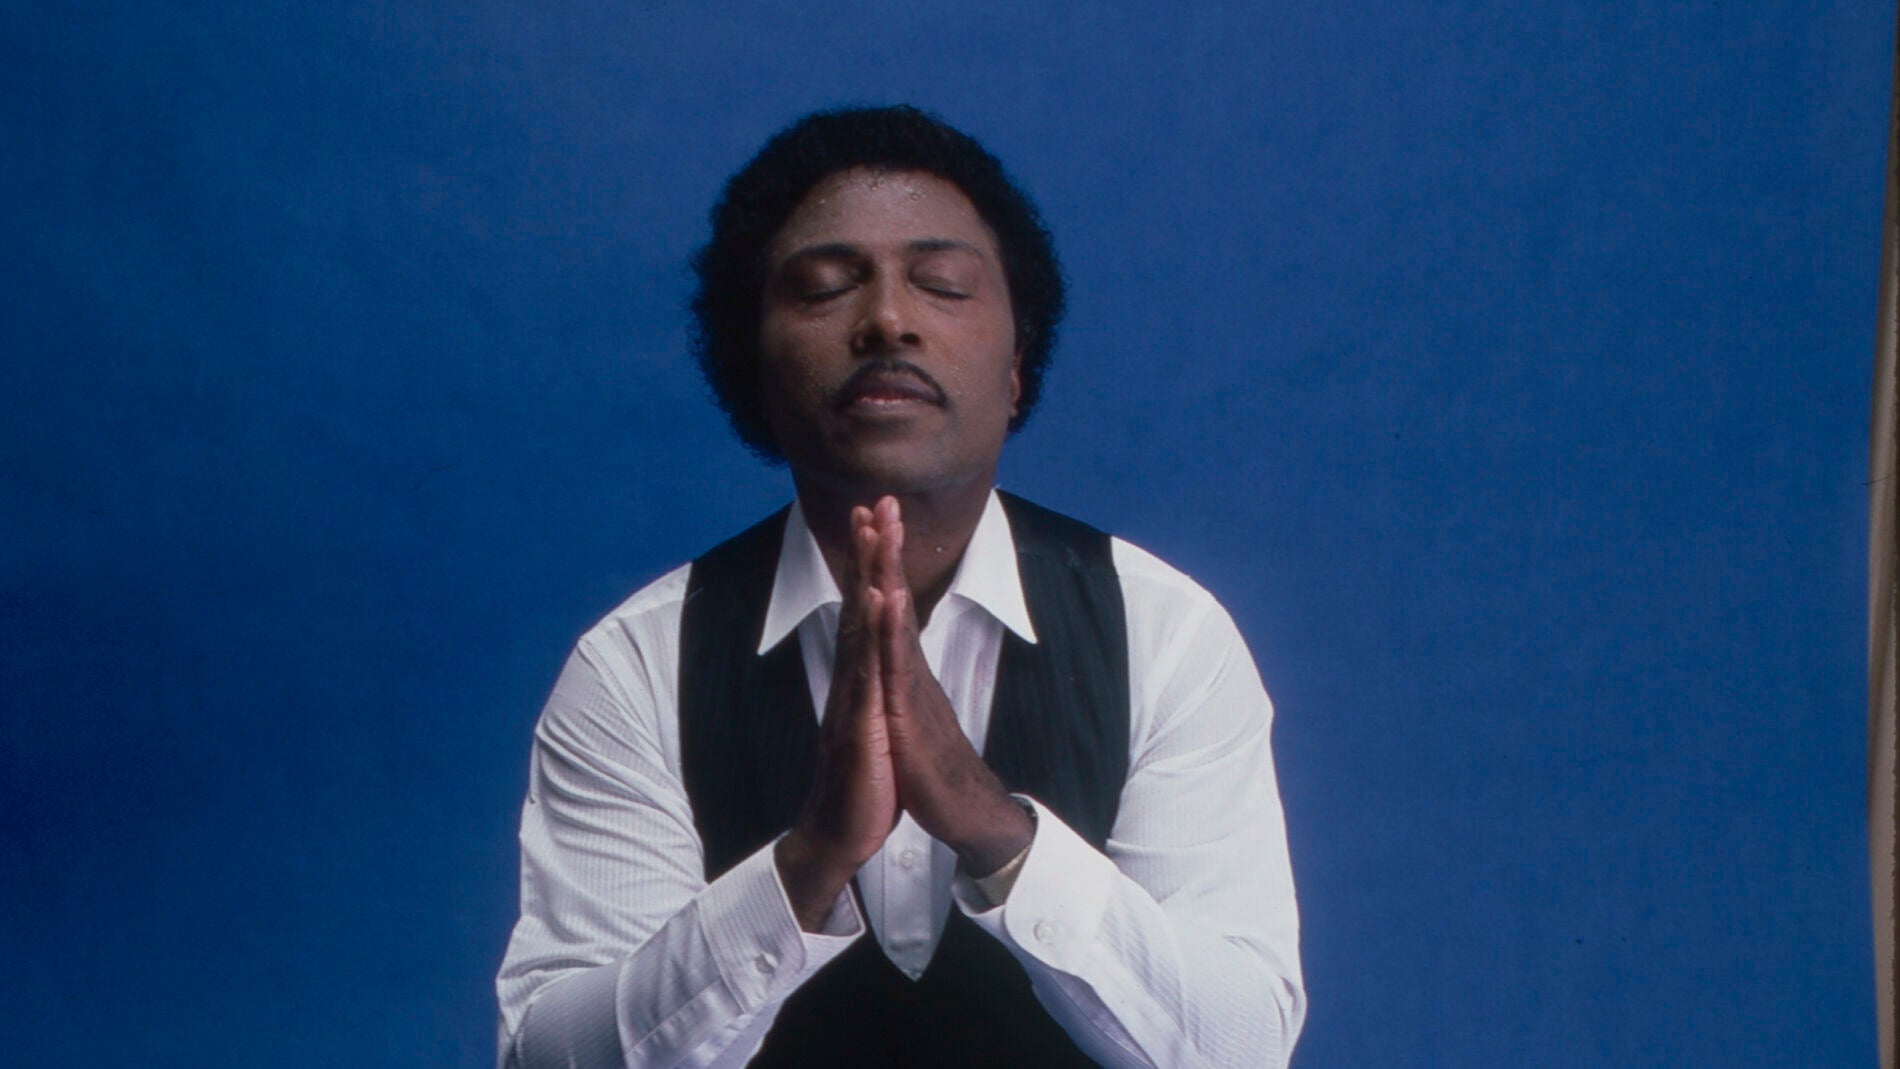 La doble vida de Little Richard el pecador sexual y el pastor de Dios imagen